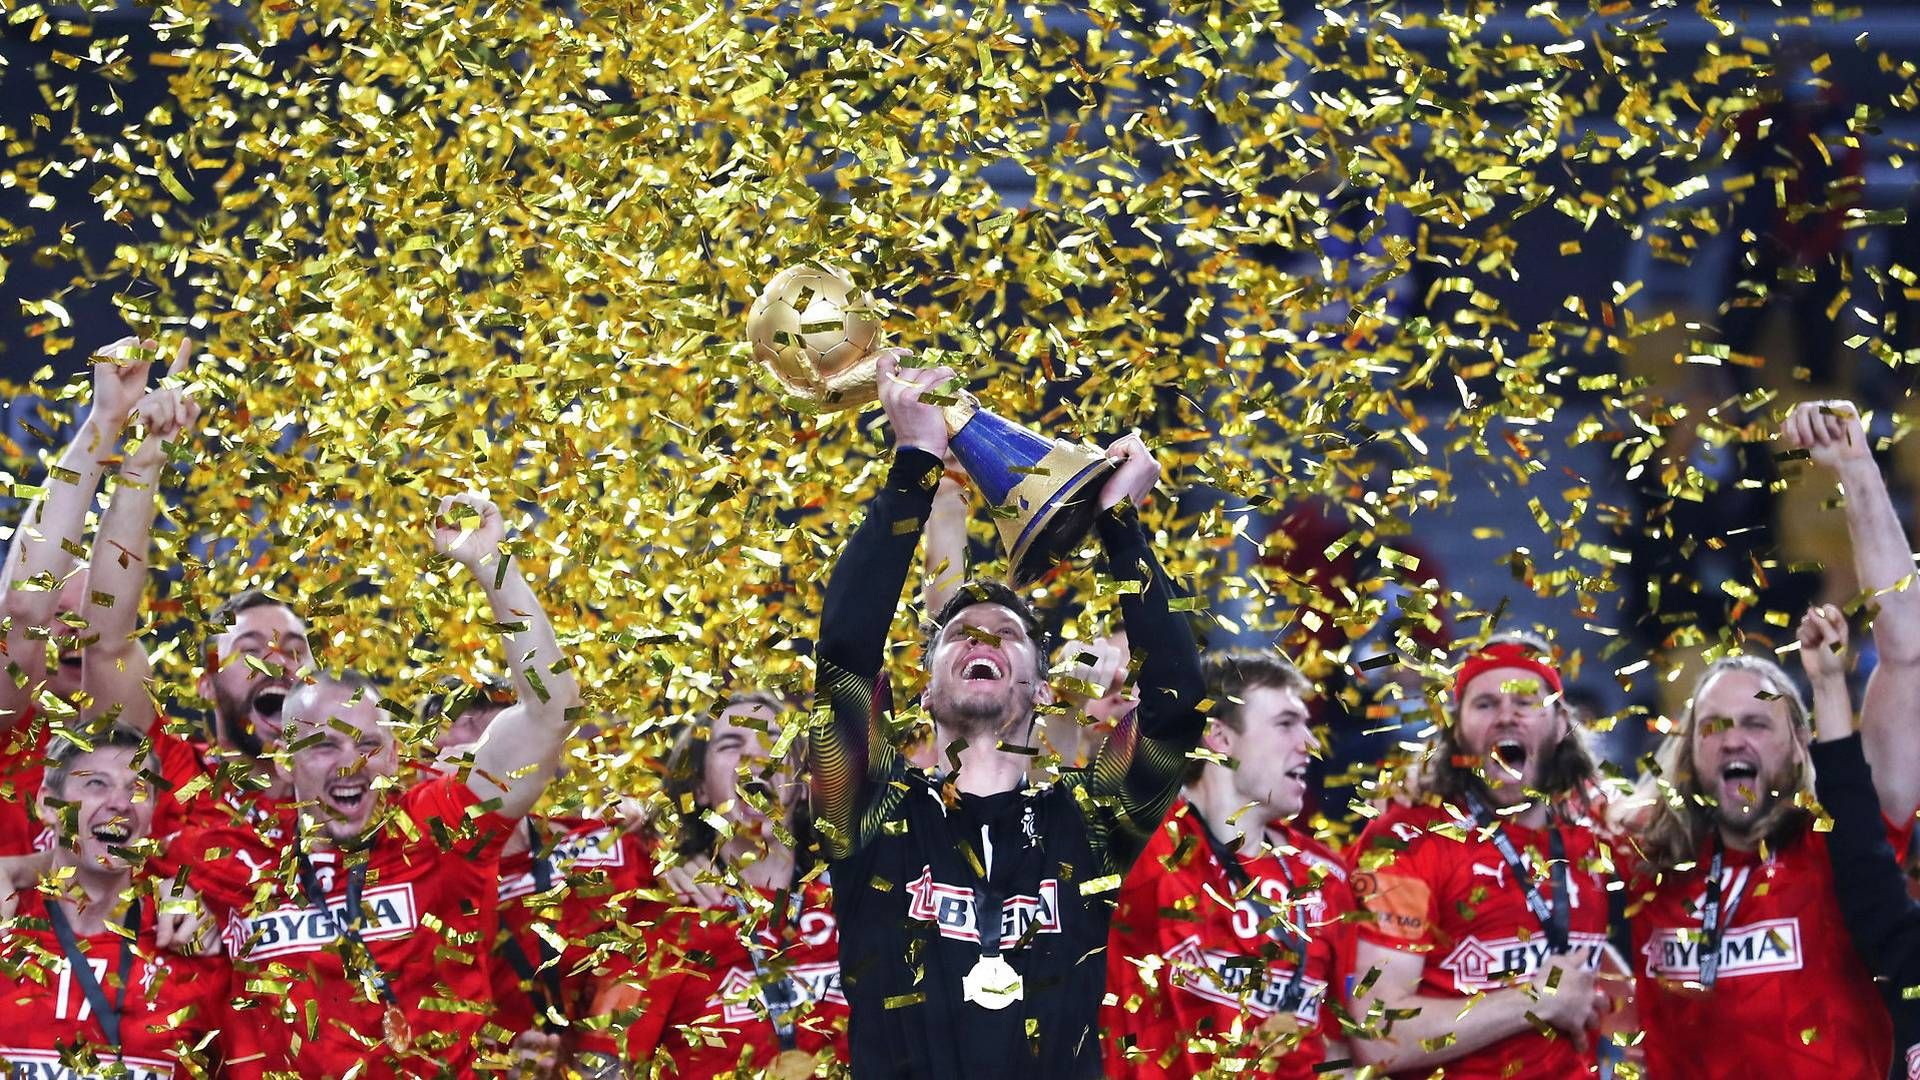 Det danske herrelandshold i håndbold vandt guld ved VM, der blev afholdt i Egypten under stor bevågenhed fra danske tv-seere. | Foto: Mohamed Abd El Ghany/Reuters/Ritzau Scanpix